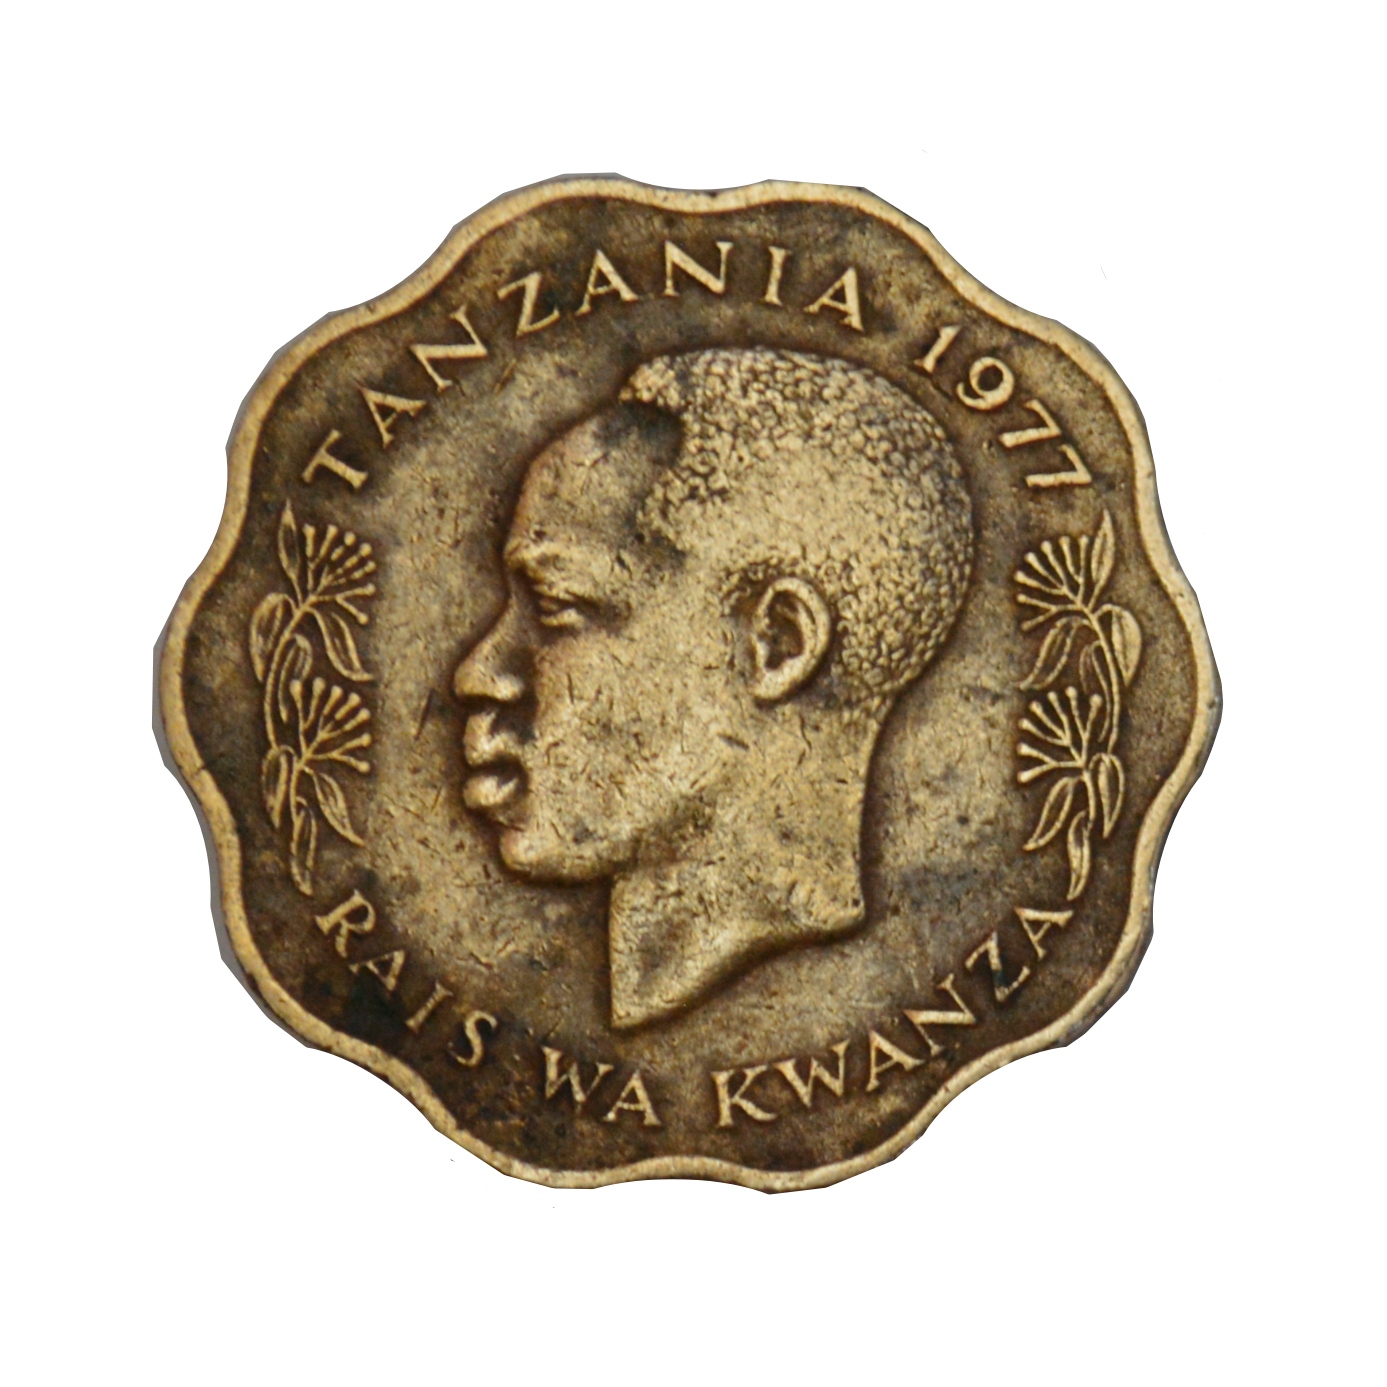 سکه تزیینی طرح کشور تانزانیا مدل 10 سنتی 1977 میلادی